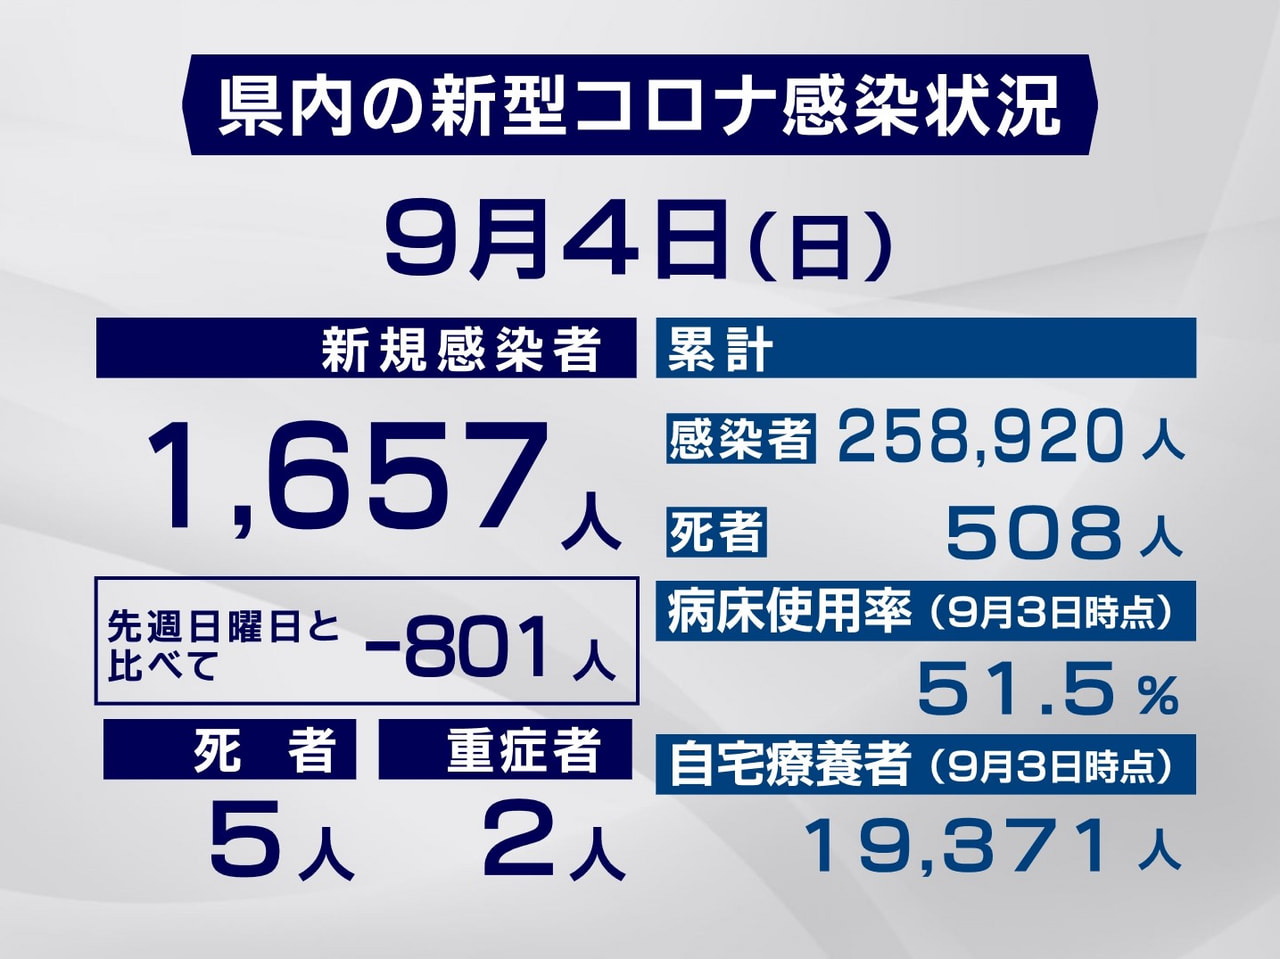 岐阜県と岐阜市は３日、新型コロナウイルスの感染者が新たに１６５７人、また５人の死...